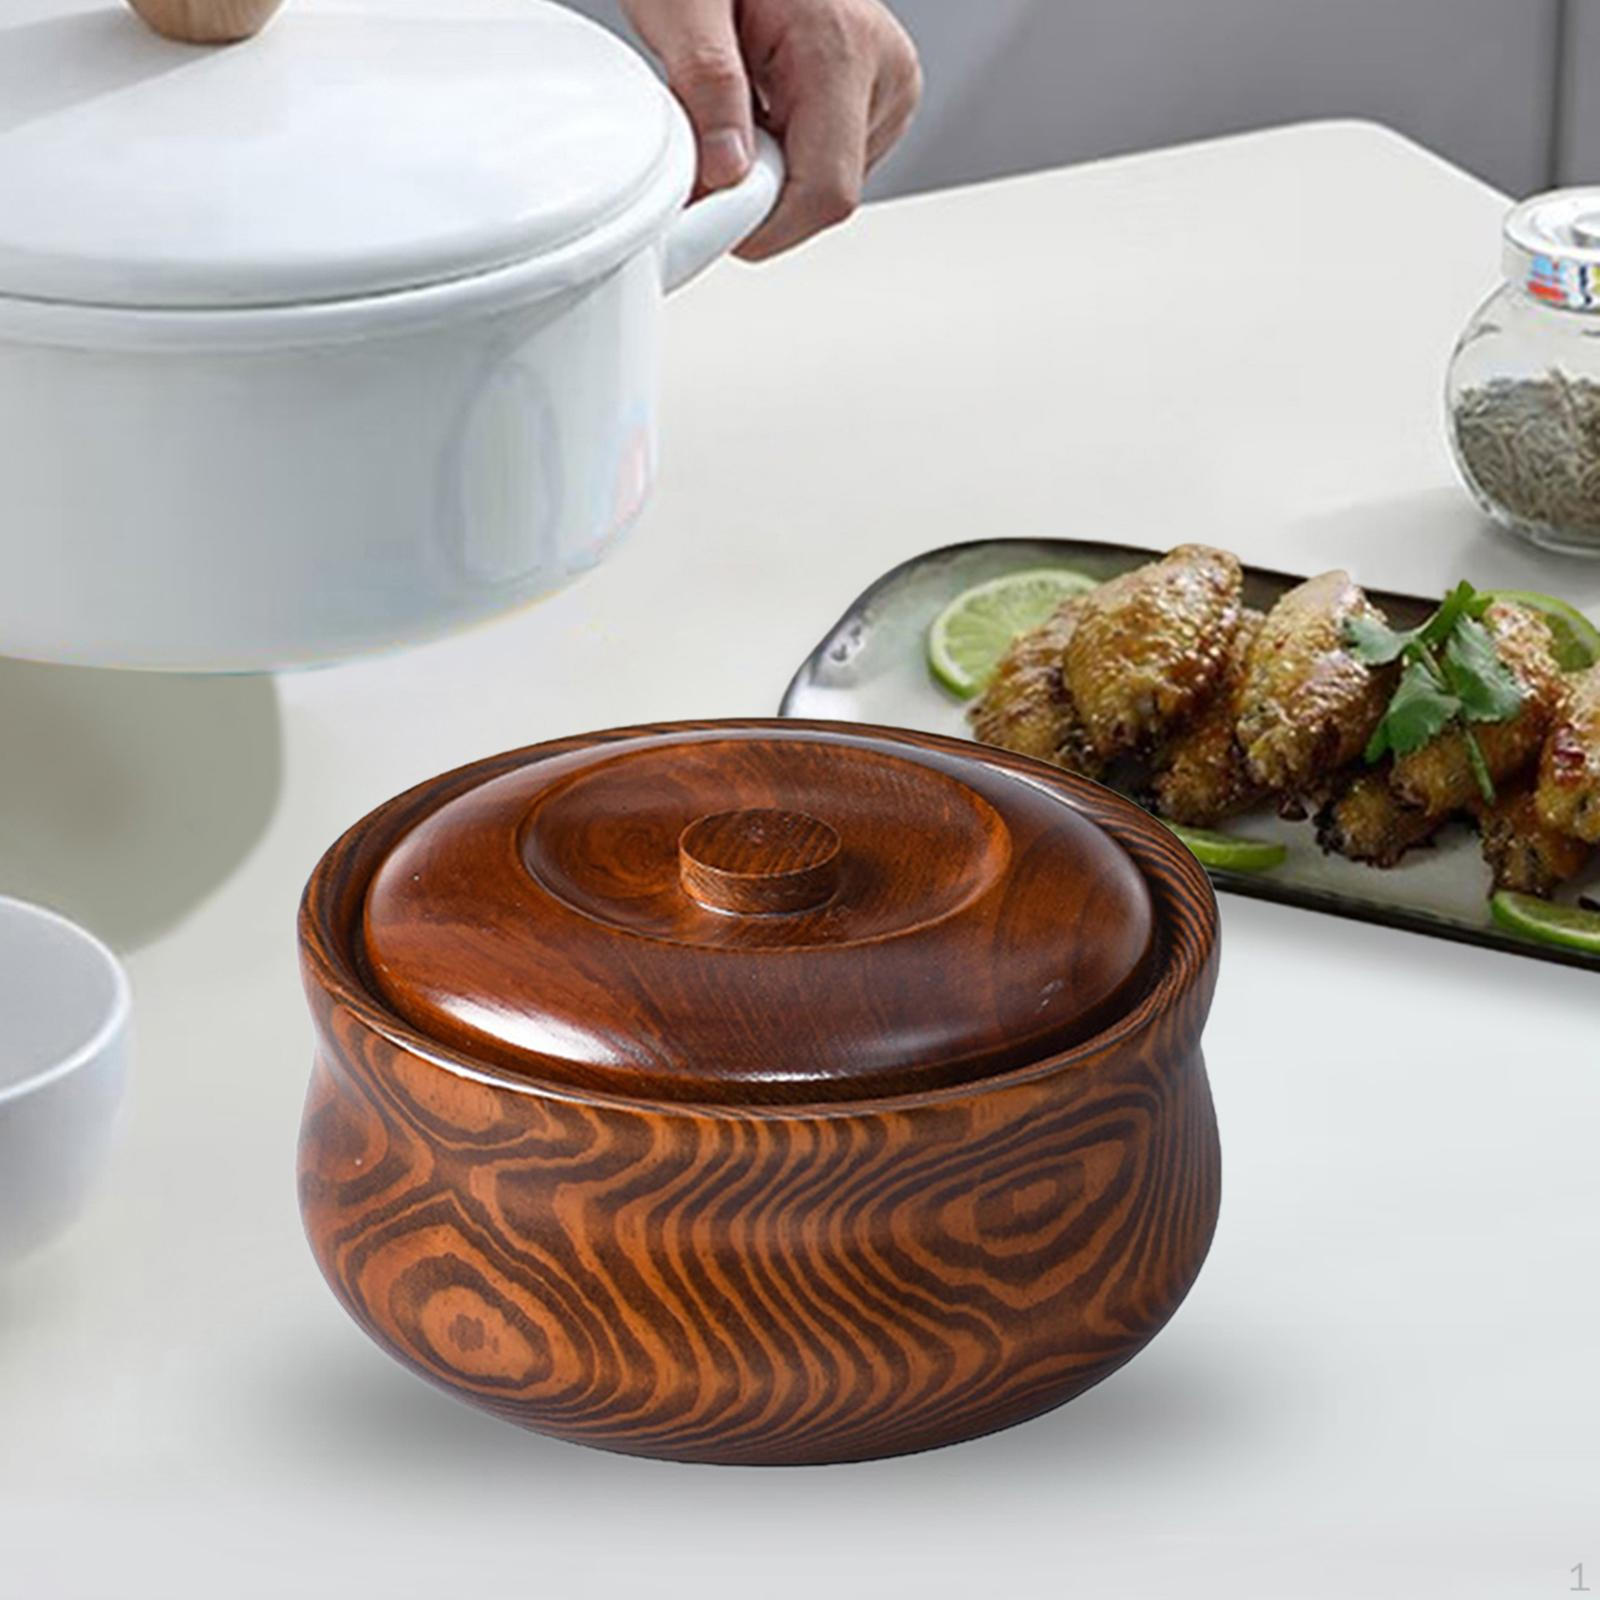 Handmade Wooden Bowl Set for Elegant Dining